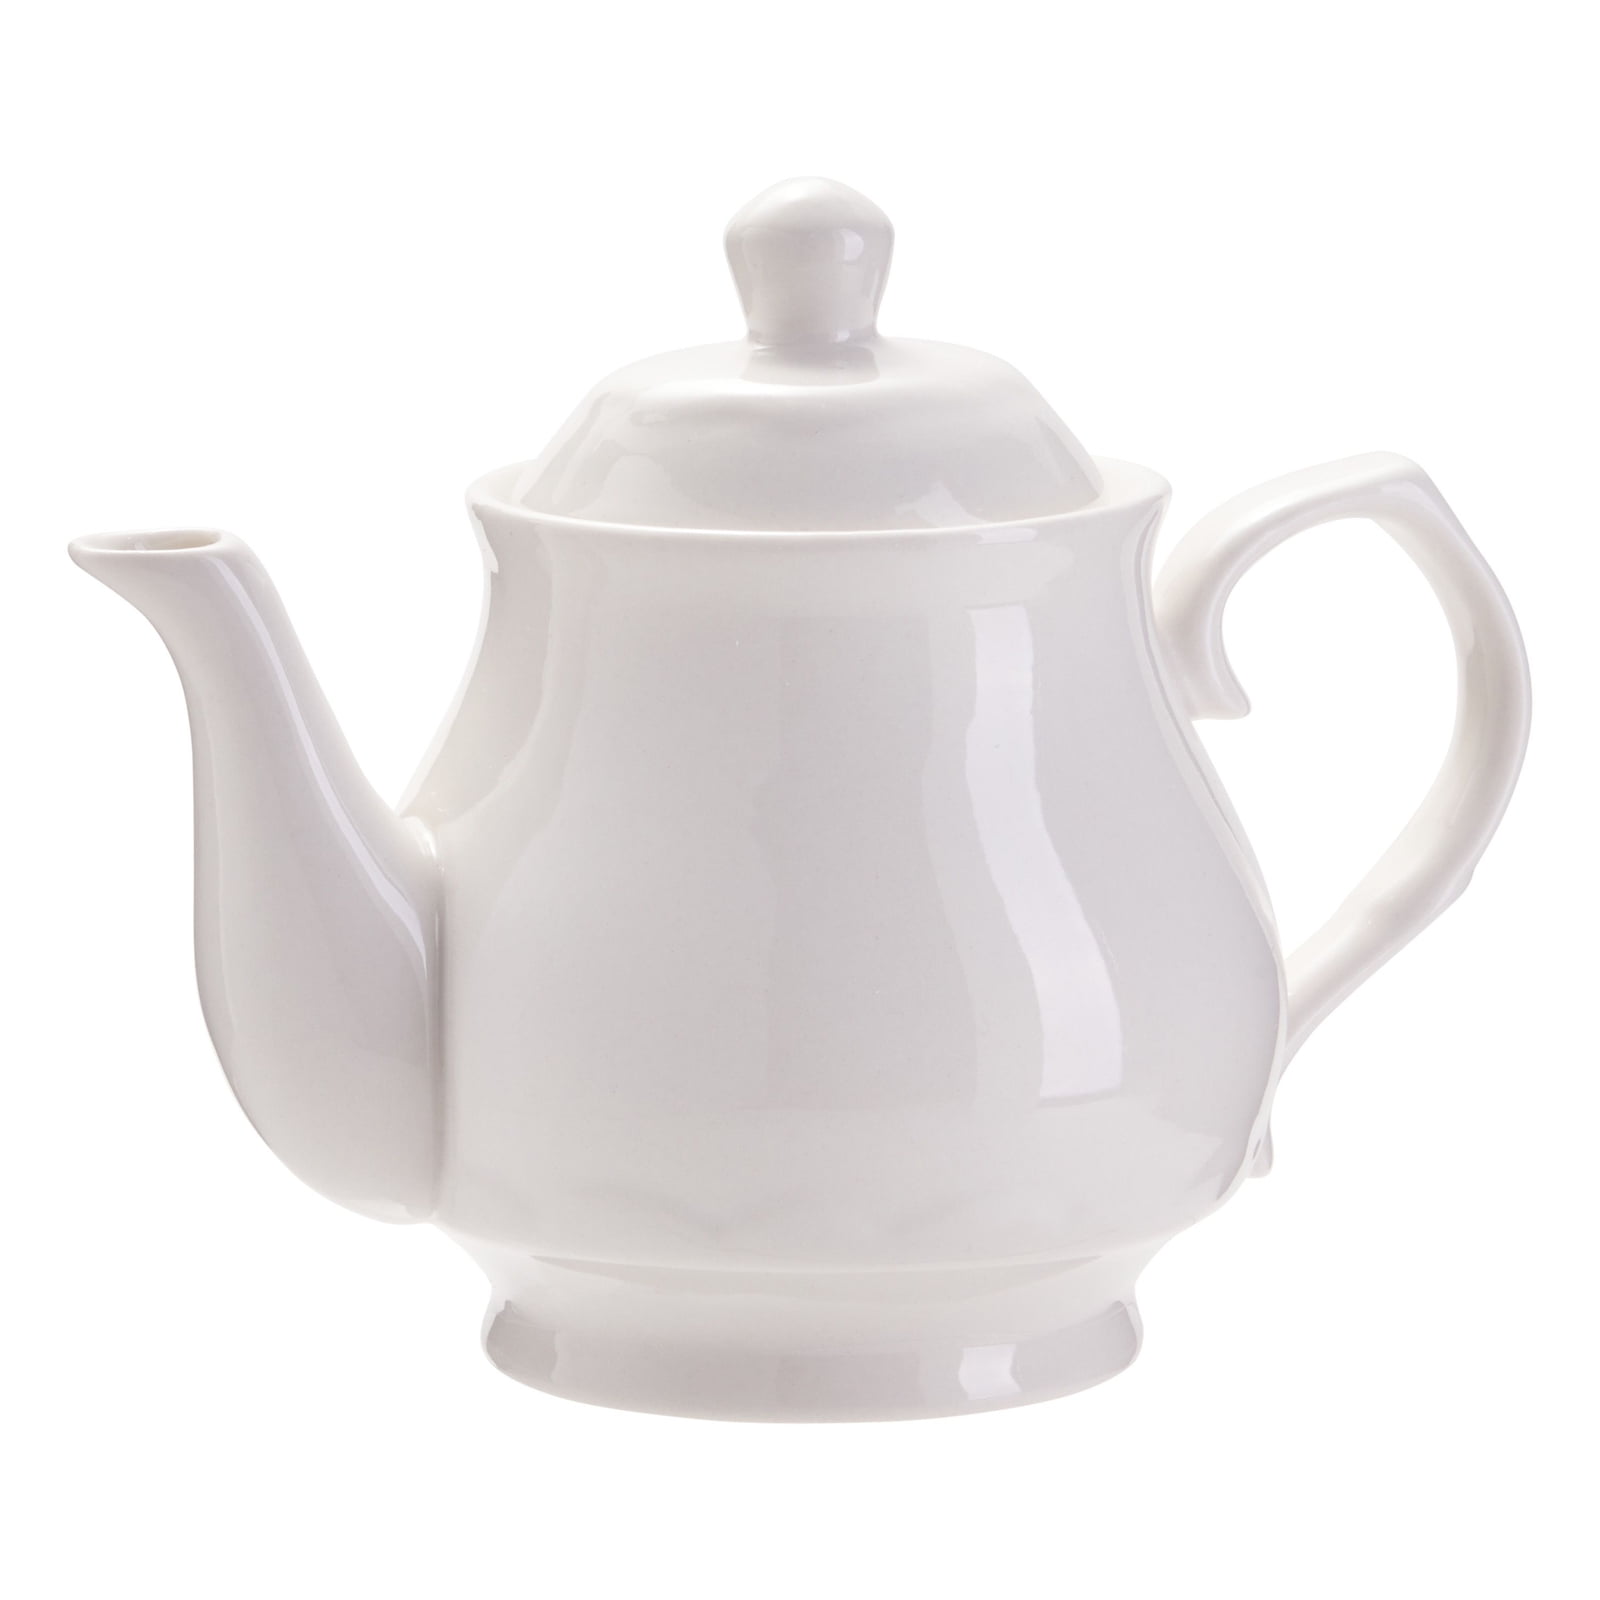 Dogs design 2 cup or 6 cup ceramic teapot or choose milk jug or sugar bowl 